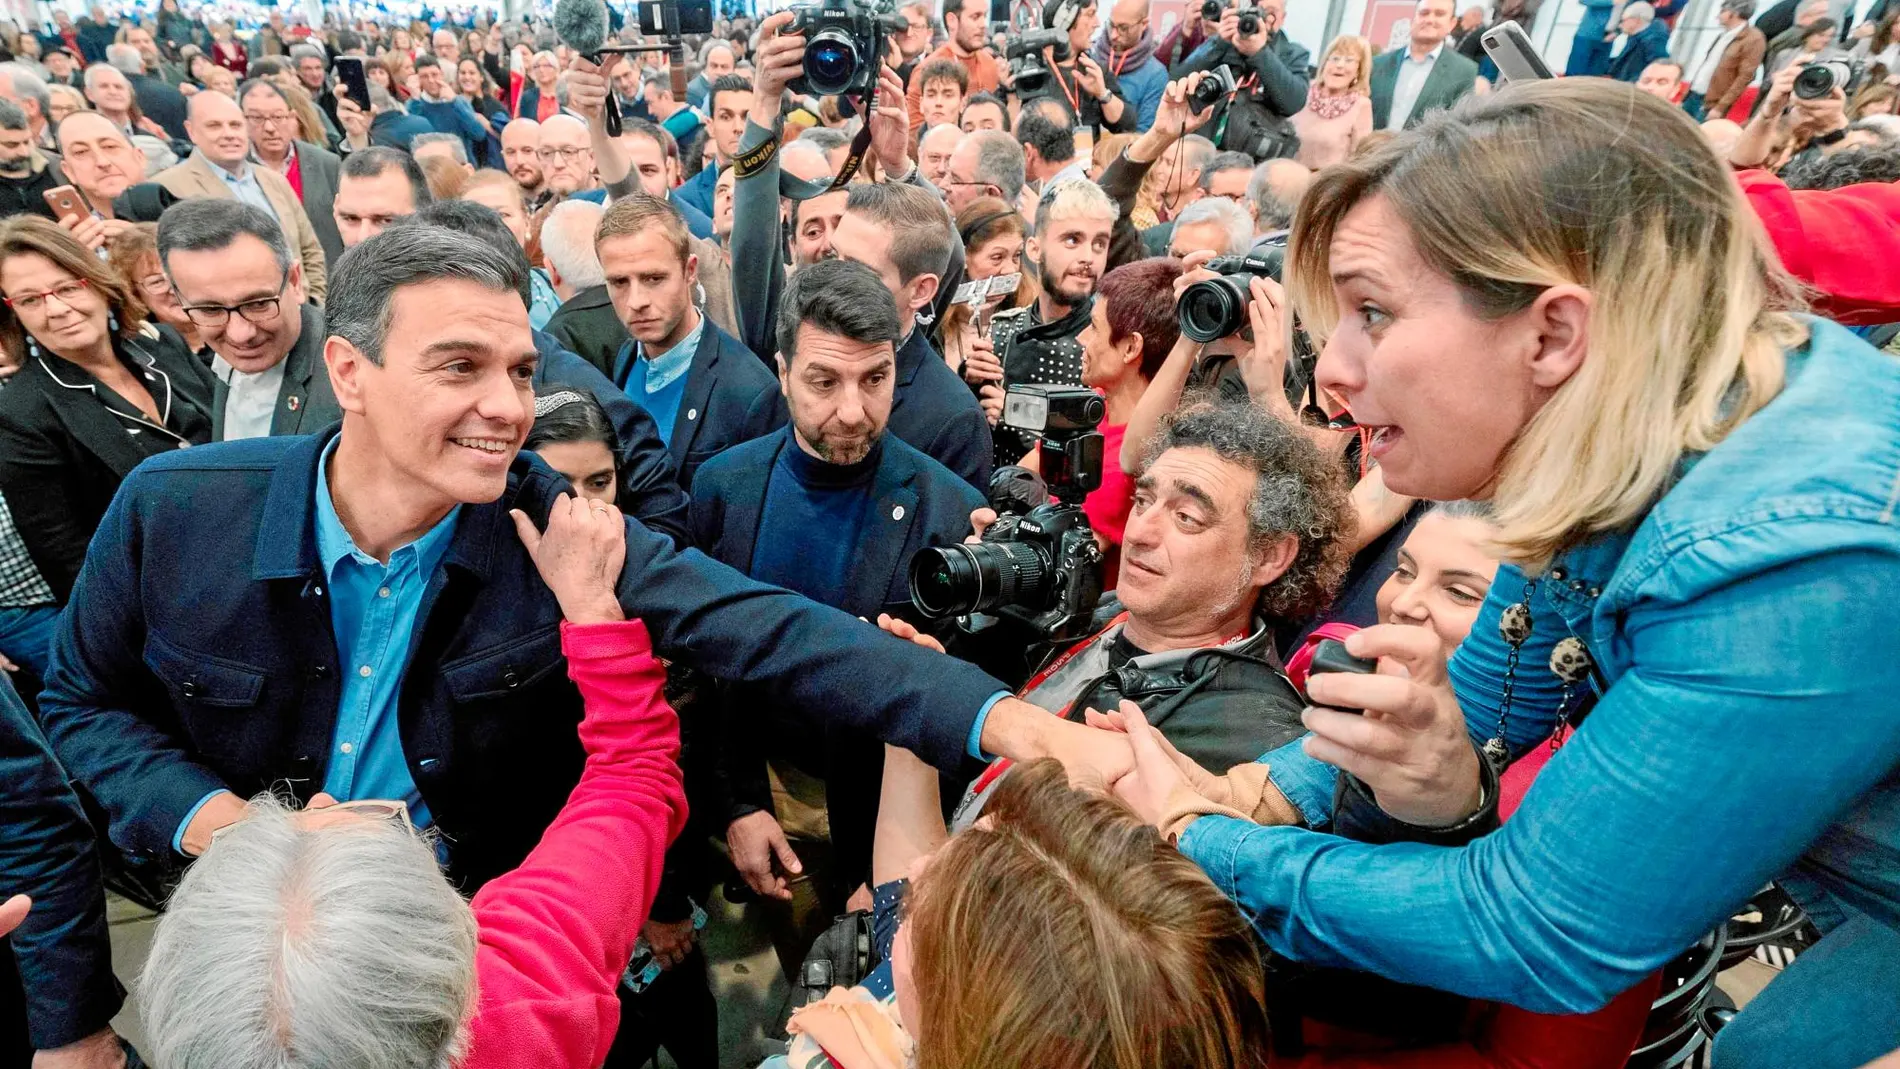 Pedro Sánchez estuvo ayer en la localidad murciana de Puente Tocinos apoyando al candidato socialista a la alcaldía de Murcia